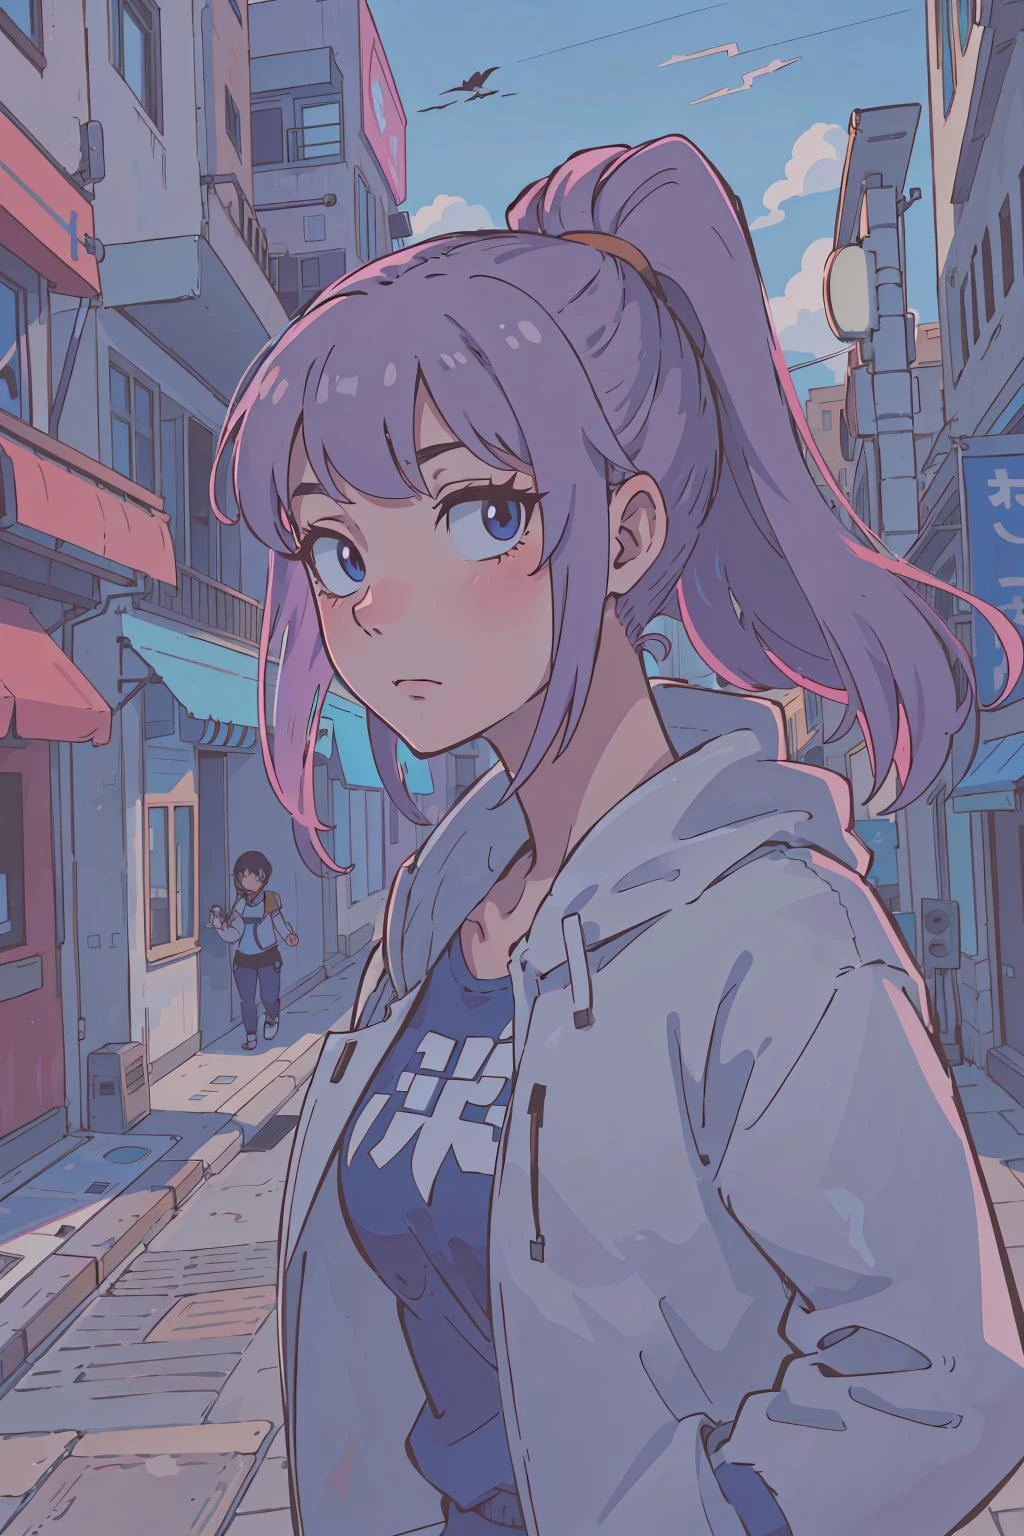 (mejor calidad:0.8),
(mejor calidad:0.8), perfecta ilustración de anime, retrato de primer plano extremo de una mujer bonita caminando por la ciudad